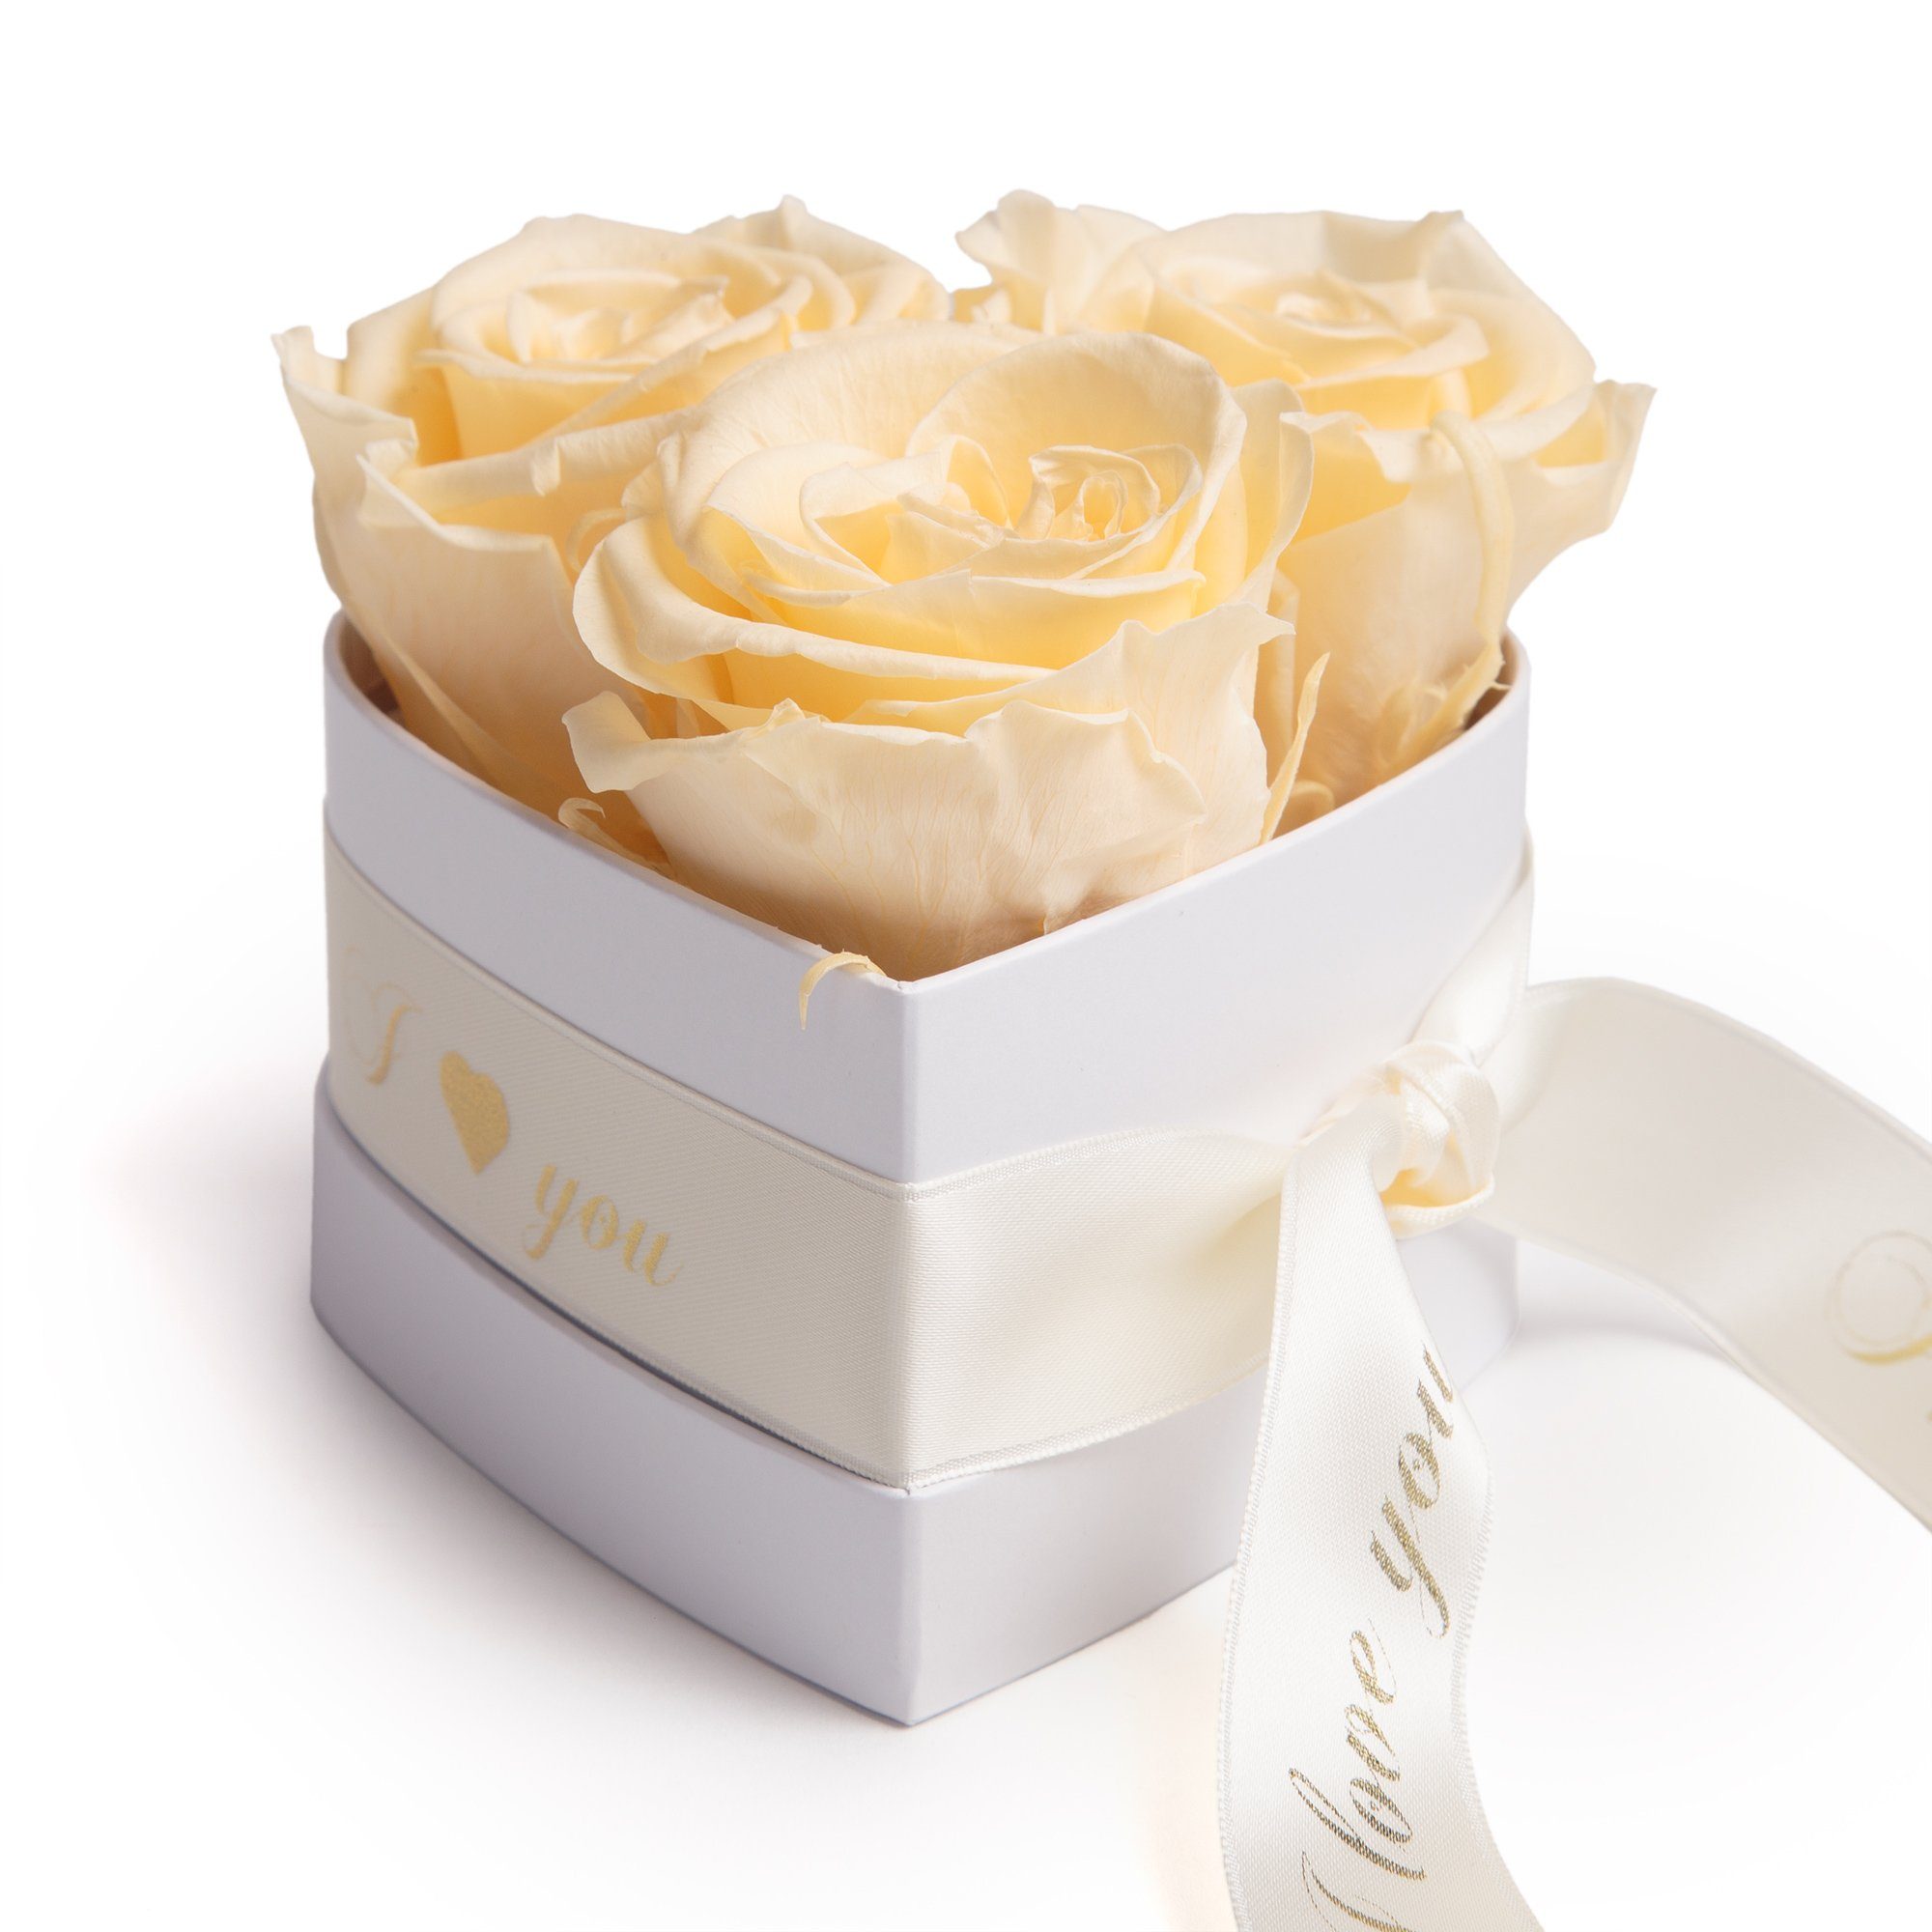 Kunstblume Rosenbox Herz 3 konservierte Infinity Rosen in Box I Love You Rose, ROSEMARIE SCHULZ Heidelberg, Höhe 8.5 cm, Valentinstag Geschenk für Sie Champagner